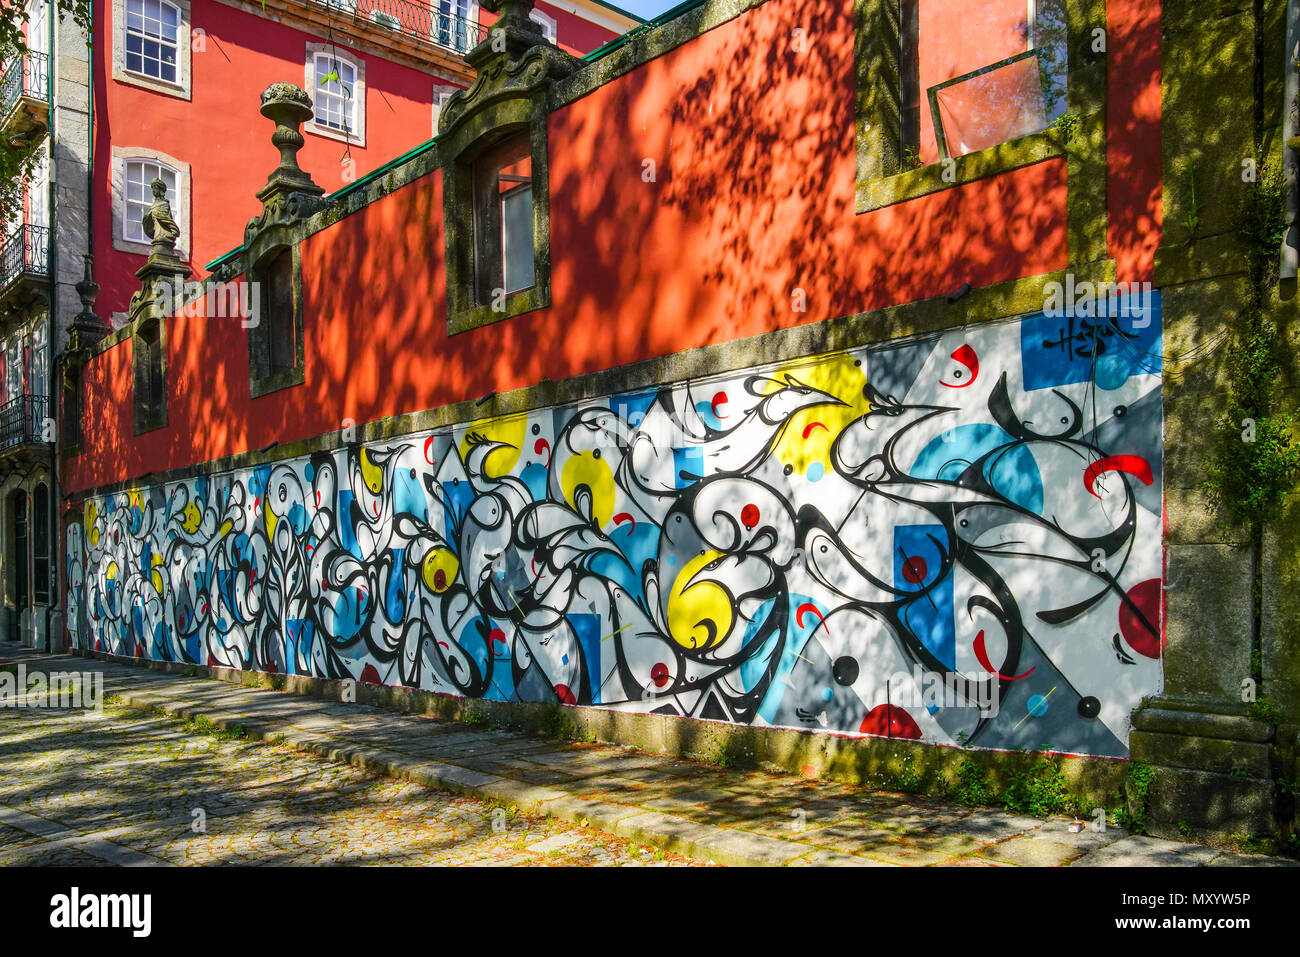 Street art and graffiti in Porto, Portugal. Stock Photo